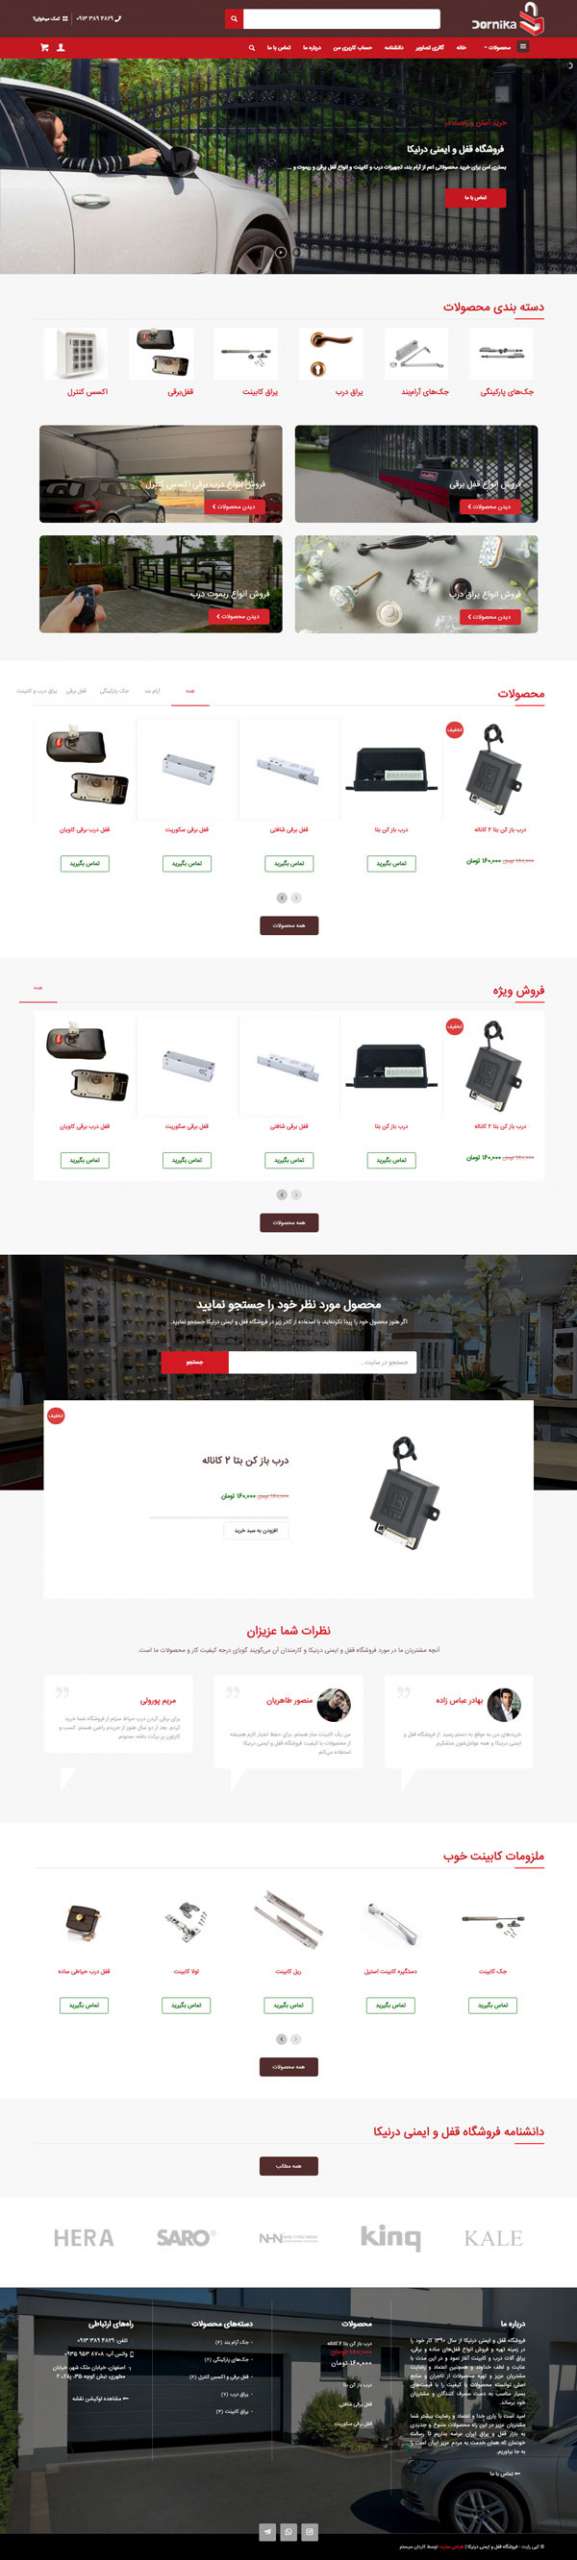 طراحی سایت دُرنیکا | فروشگاه قفل برقی و یراق آلات